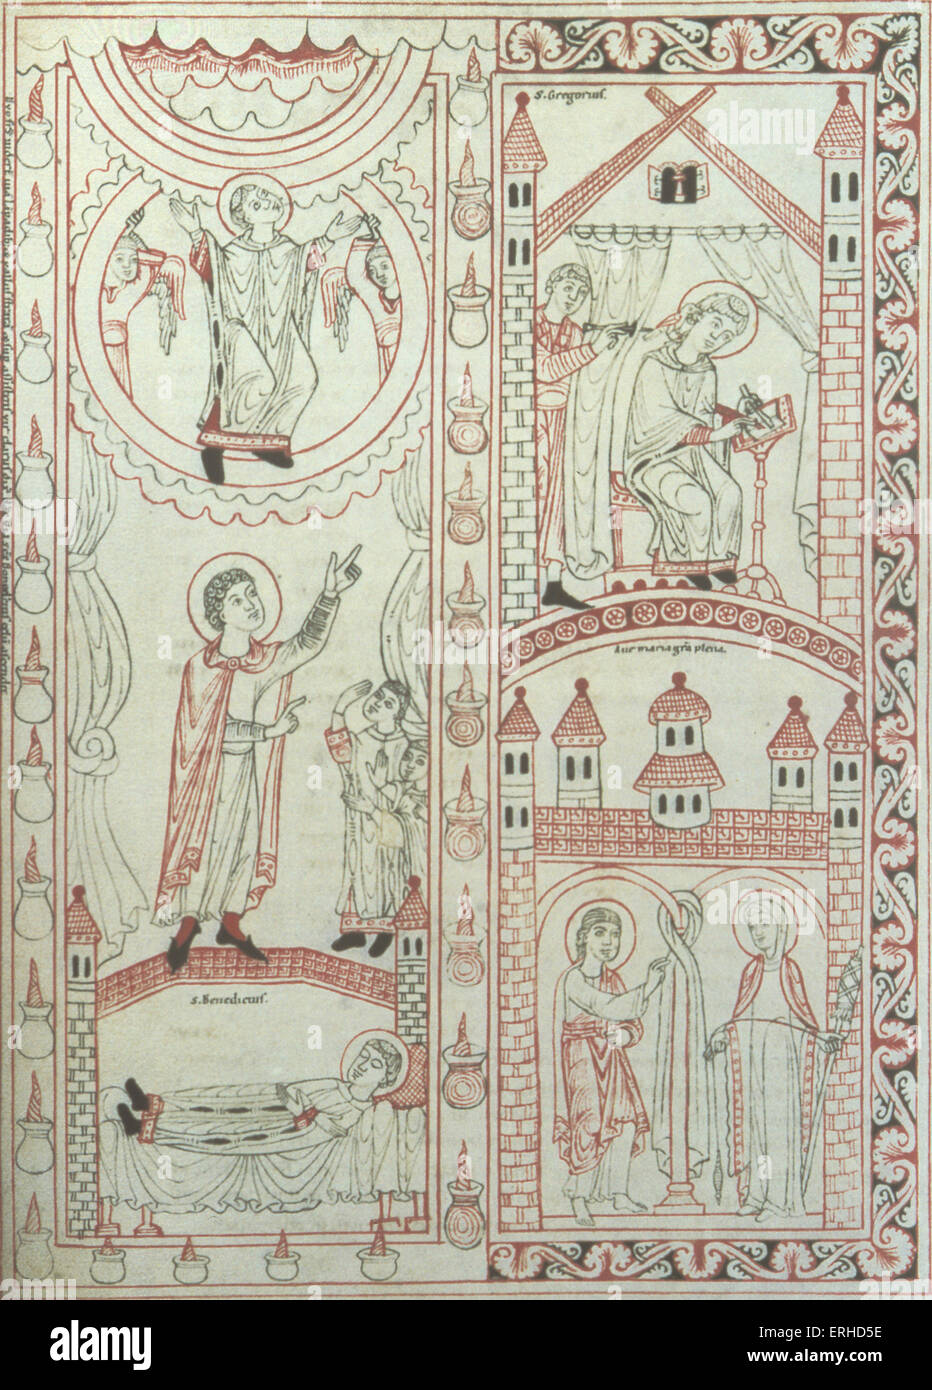 Mittelalterliche 10. / 11thC schwäbischen beleuchtet Manuskript zeigt St Gregory (Papst Gregory) (Diktat durch den Heiligen Geist - Stockfoto